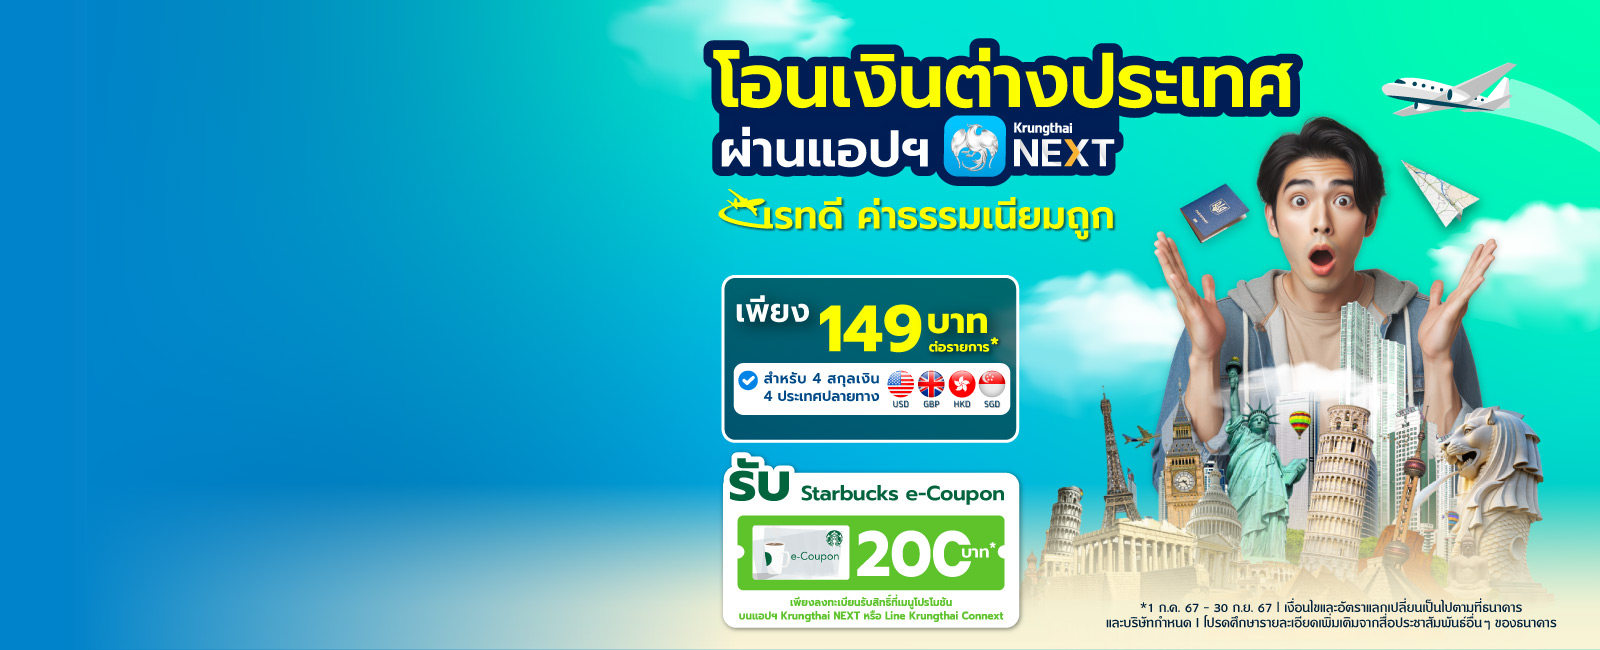 โอนเงินไปต่างประเทศ ผ่าน Krungthai NEXT - desktop